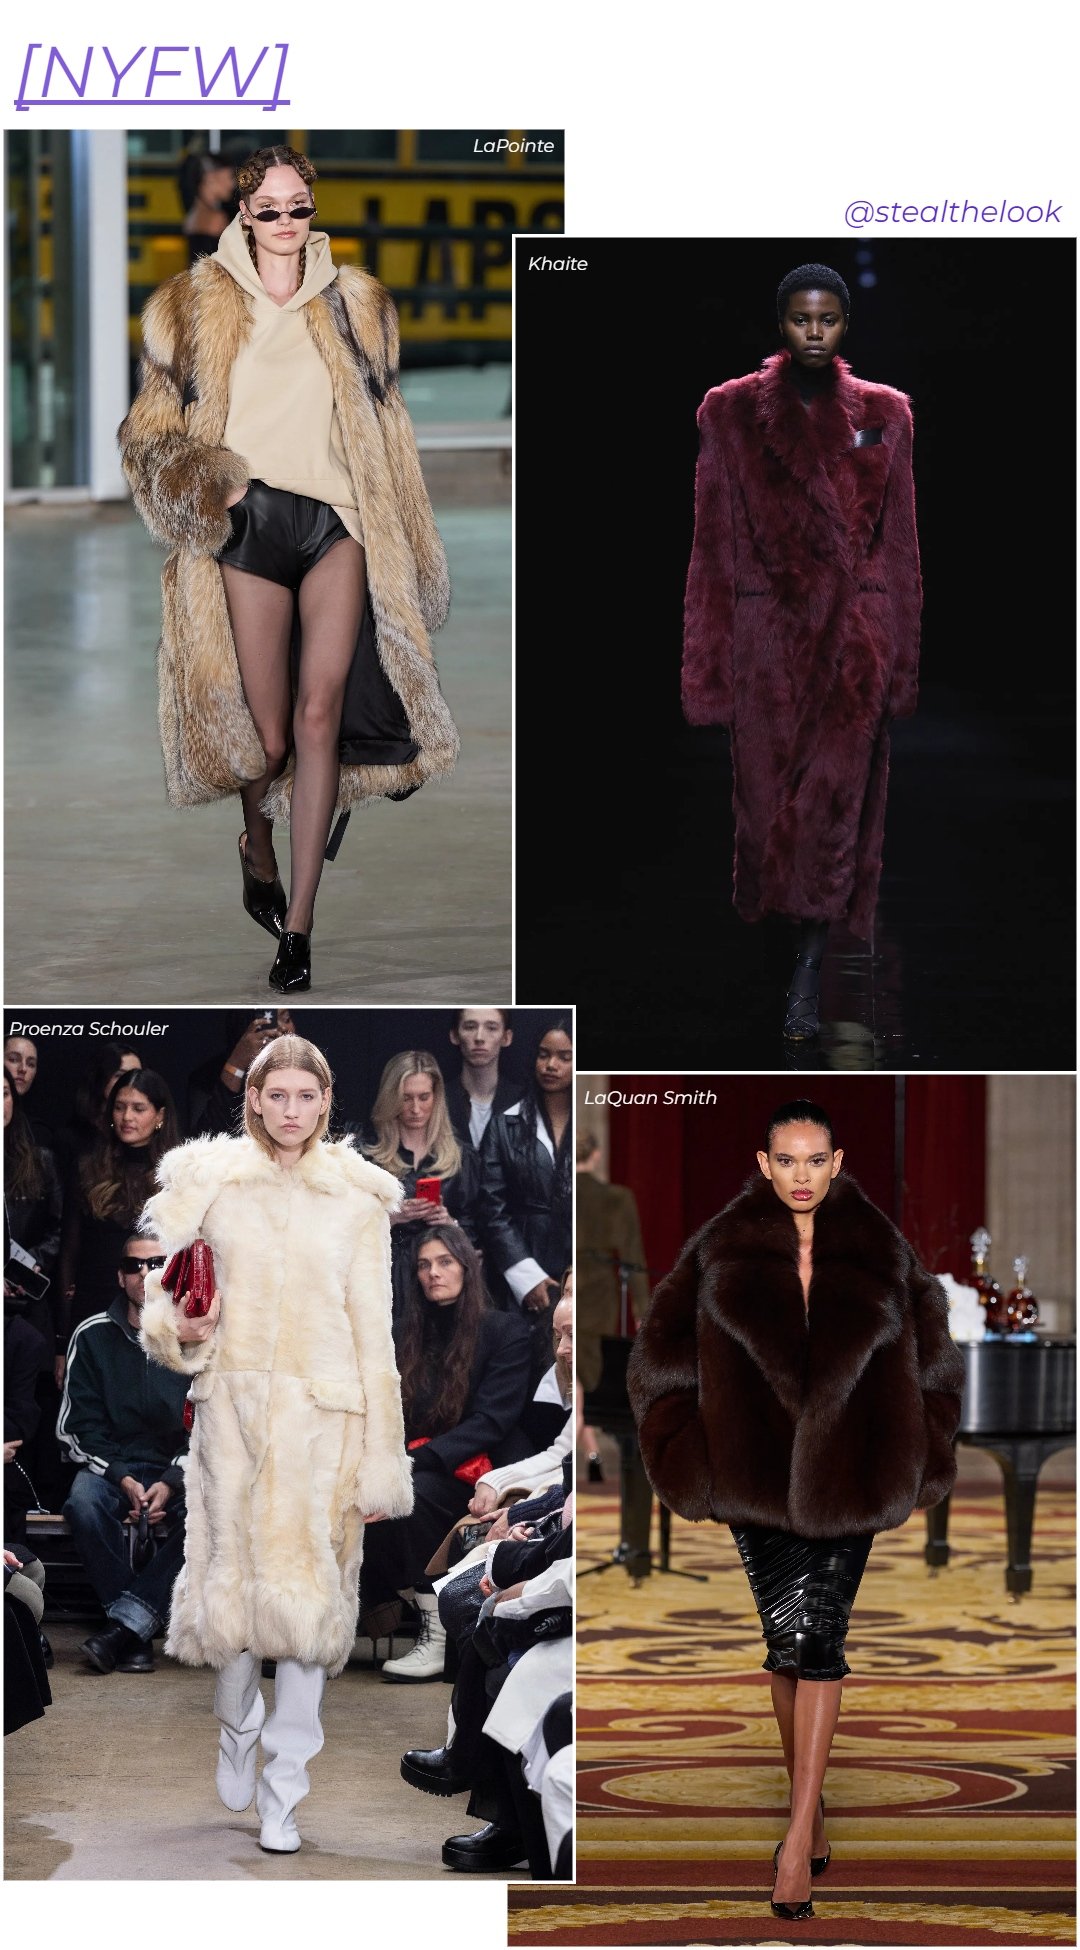 NYFW - roupas diversas - casaco de inverno - inverno - colagem com 4 fotos diferentes da modelo andando - https://stealthelook.com.br